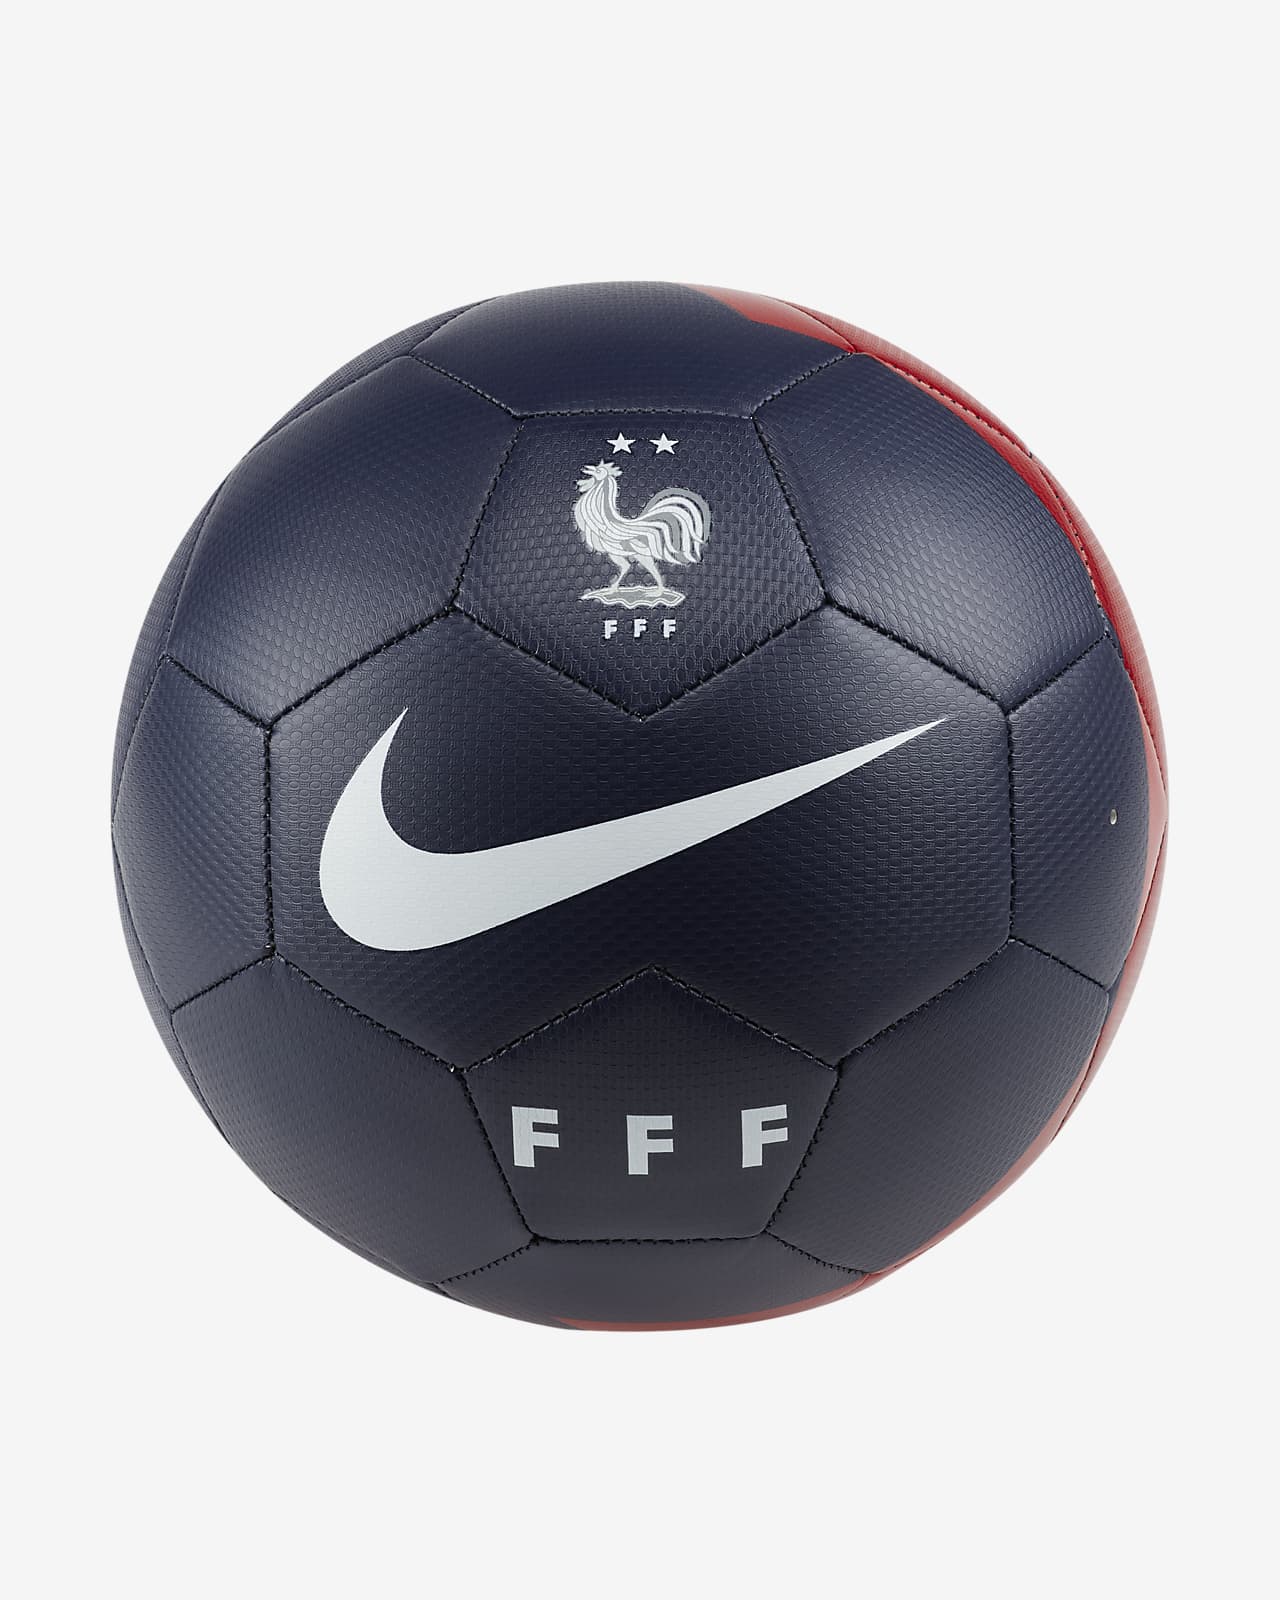 Piłka do piłki nożnej FFF Prestige